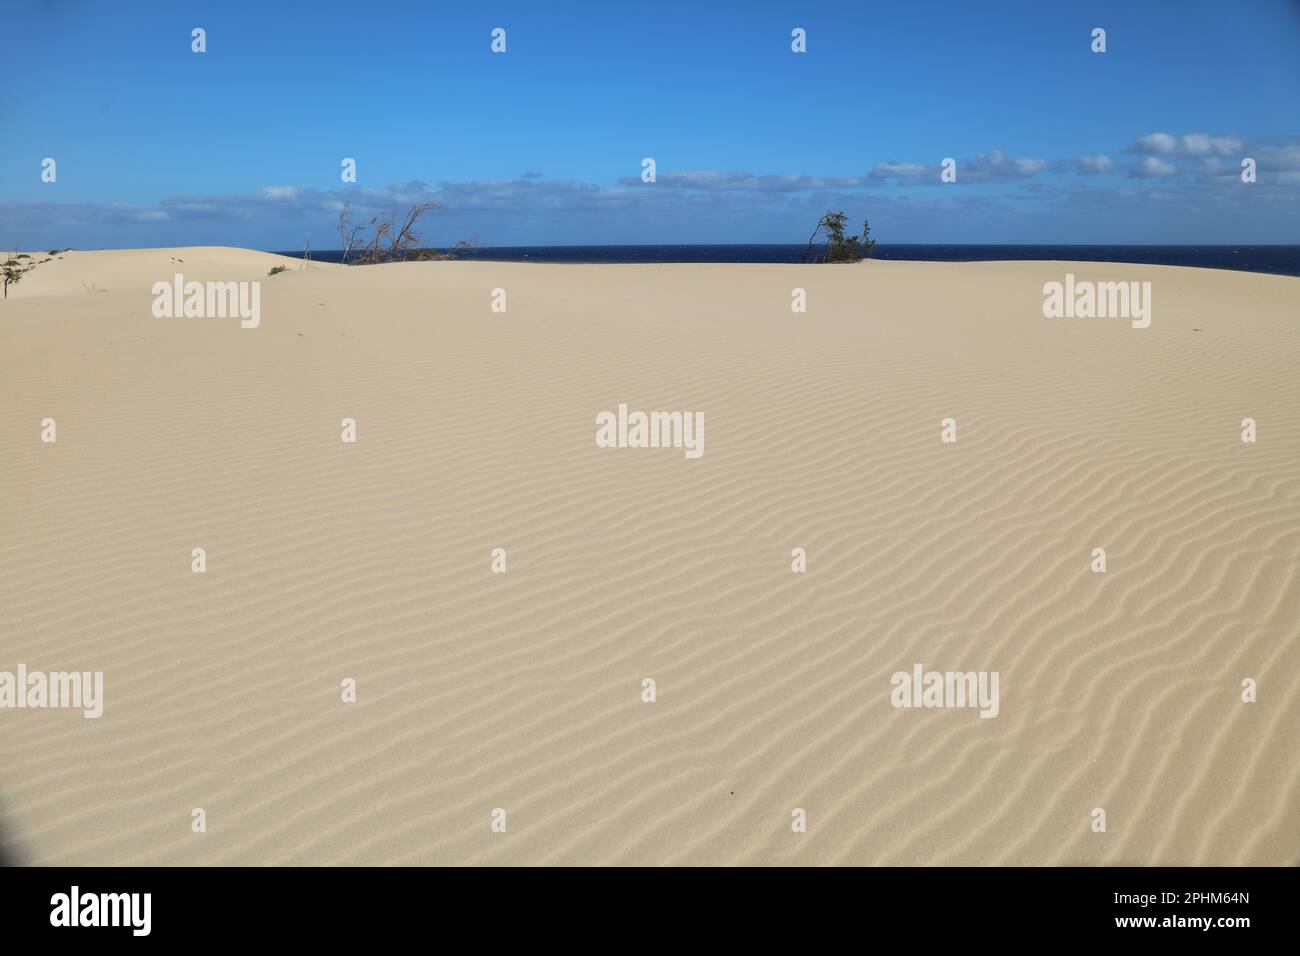 Paesaggio desertico con dune e onde di sabbia Foto Stock